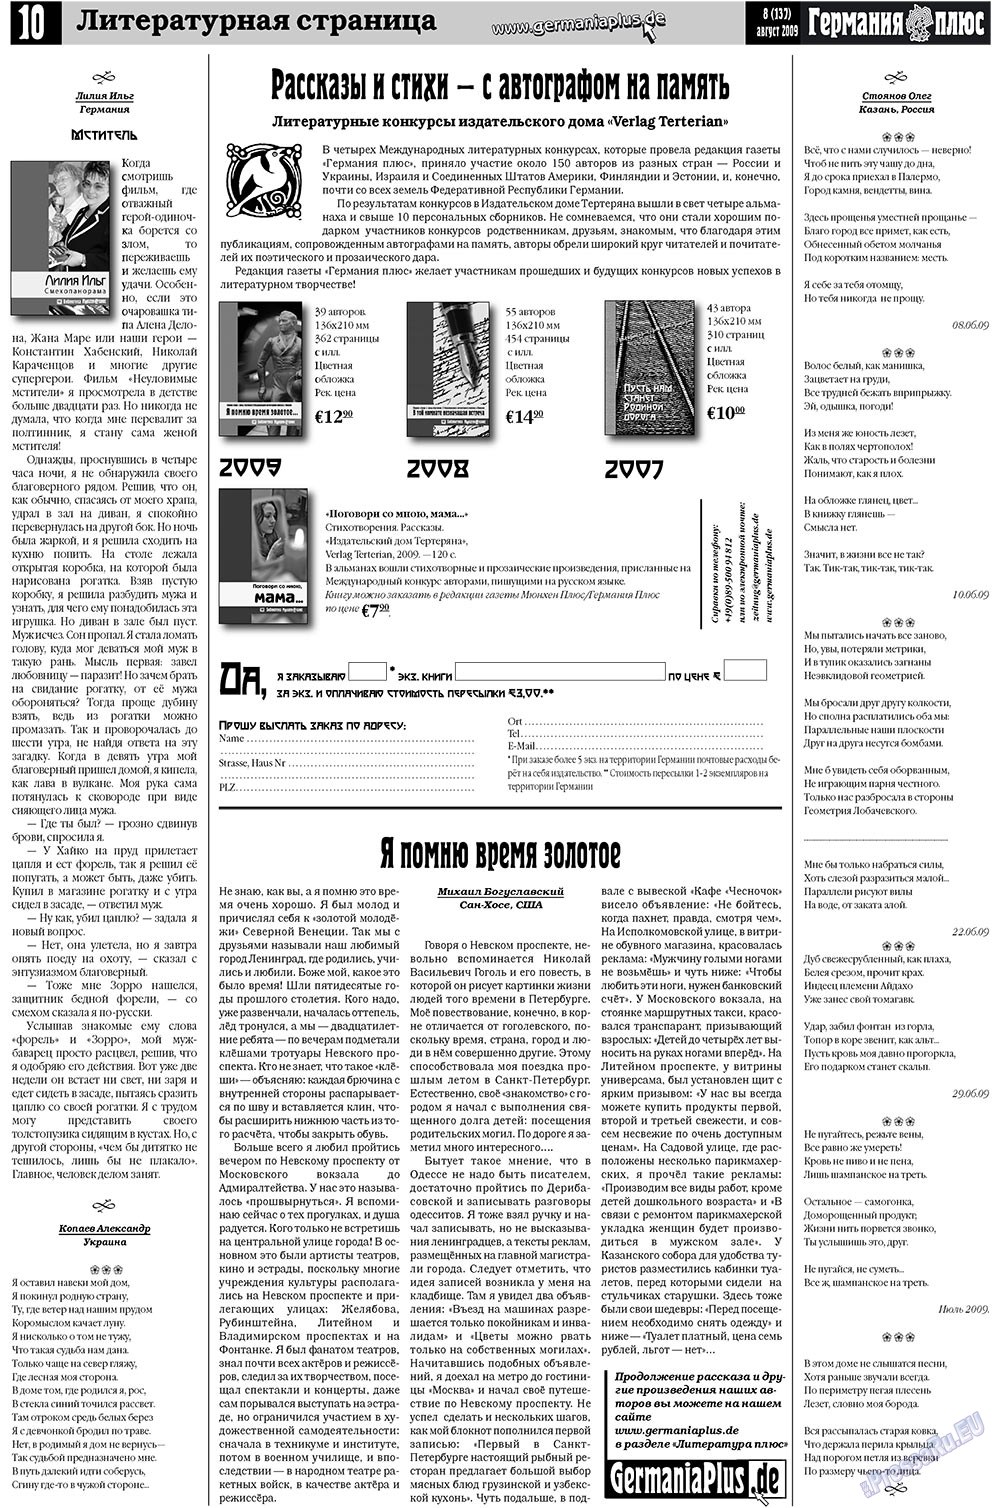 Германия плюс (газета). 2009 год, номер 8, стр. 14